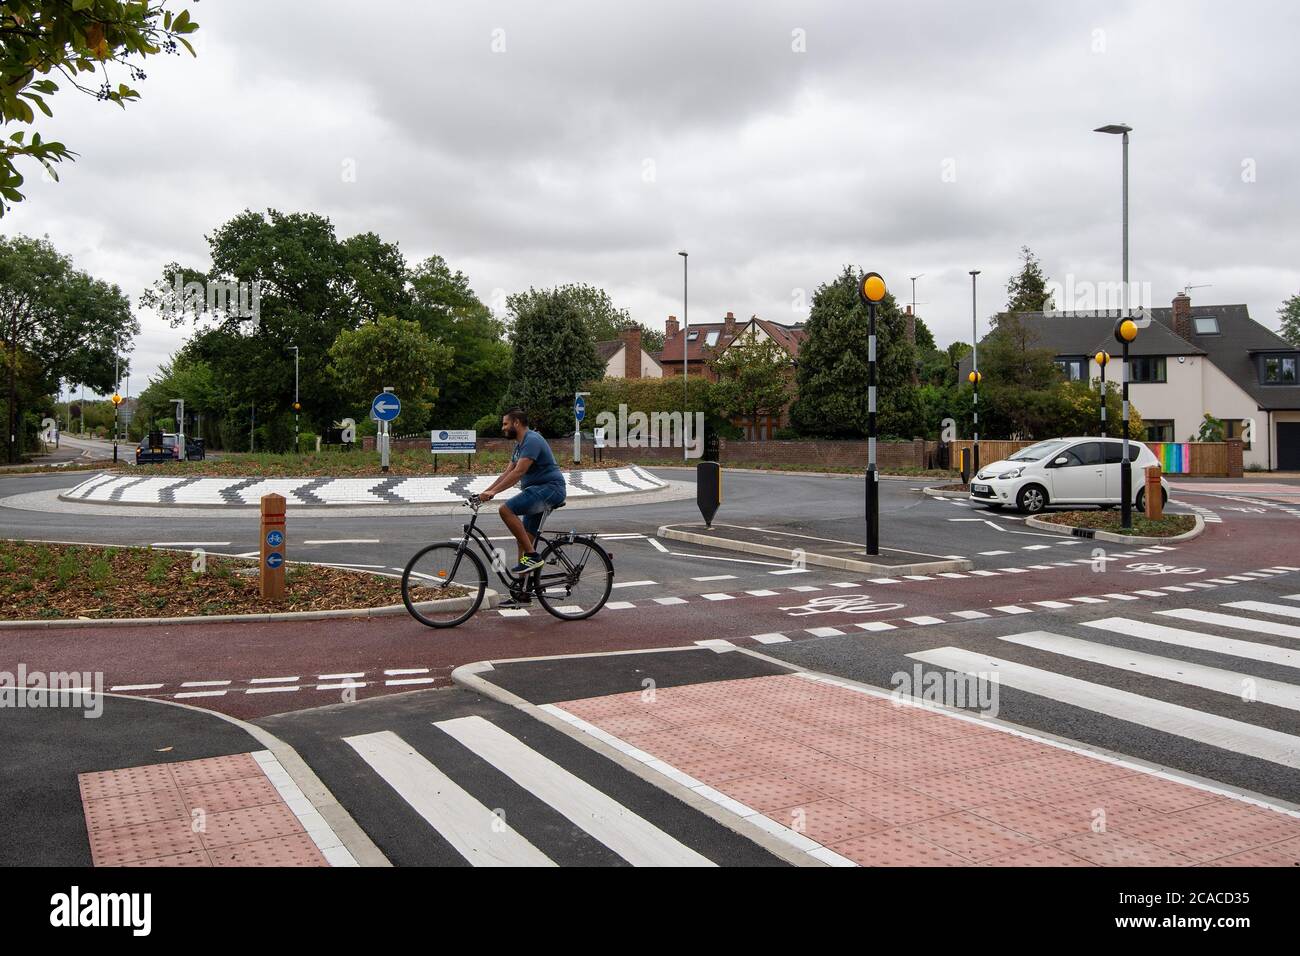 Le premier rond-point de style hollandais du Royaume-Uni, qui donne la priorité aux cyclistes et aux piétons par rapport aux automobilistes, a ouvert ses portes à Fendon Road, à Cambridge. Le coût du projet, estimé à l'origine à environ 800,000 GBP, a presque triplé à 2,3 millions de GBP à la fin du projet. Banque D'Images